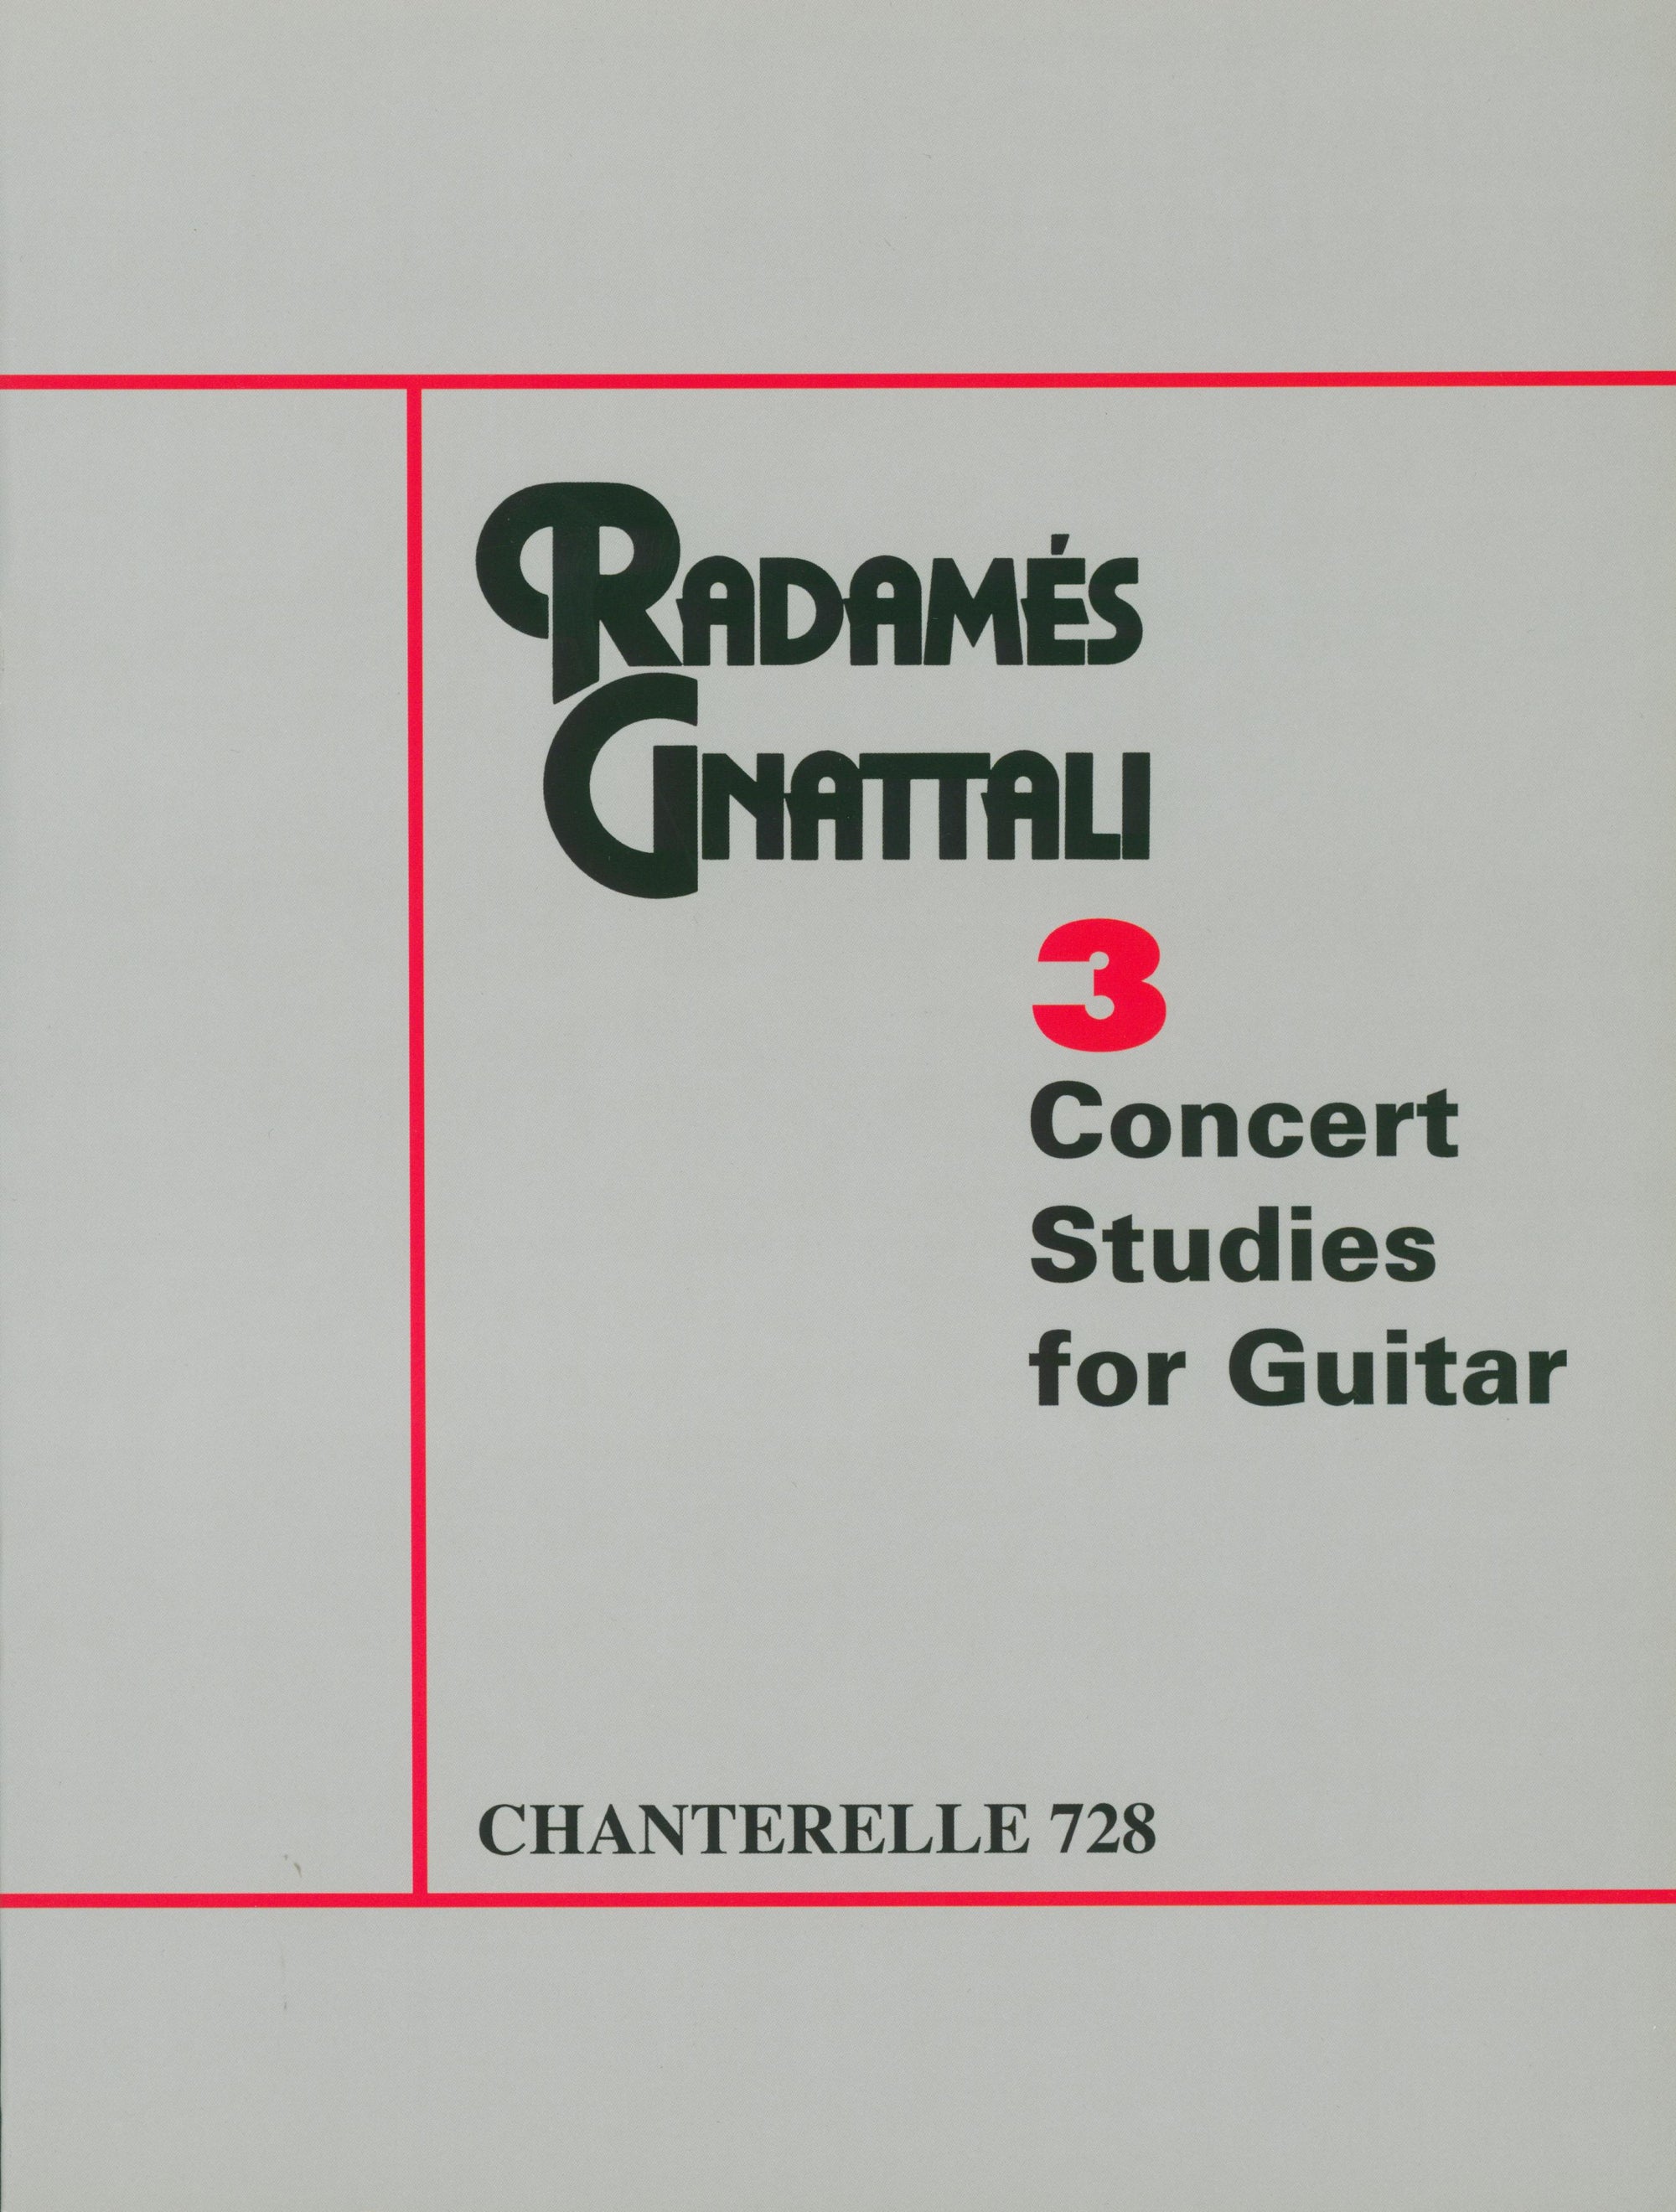 Gnattali: 3 Concert Studies